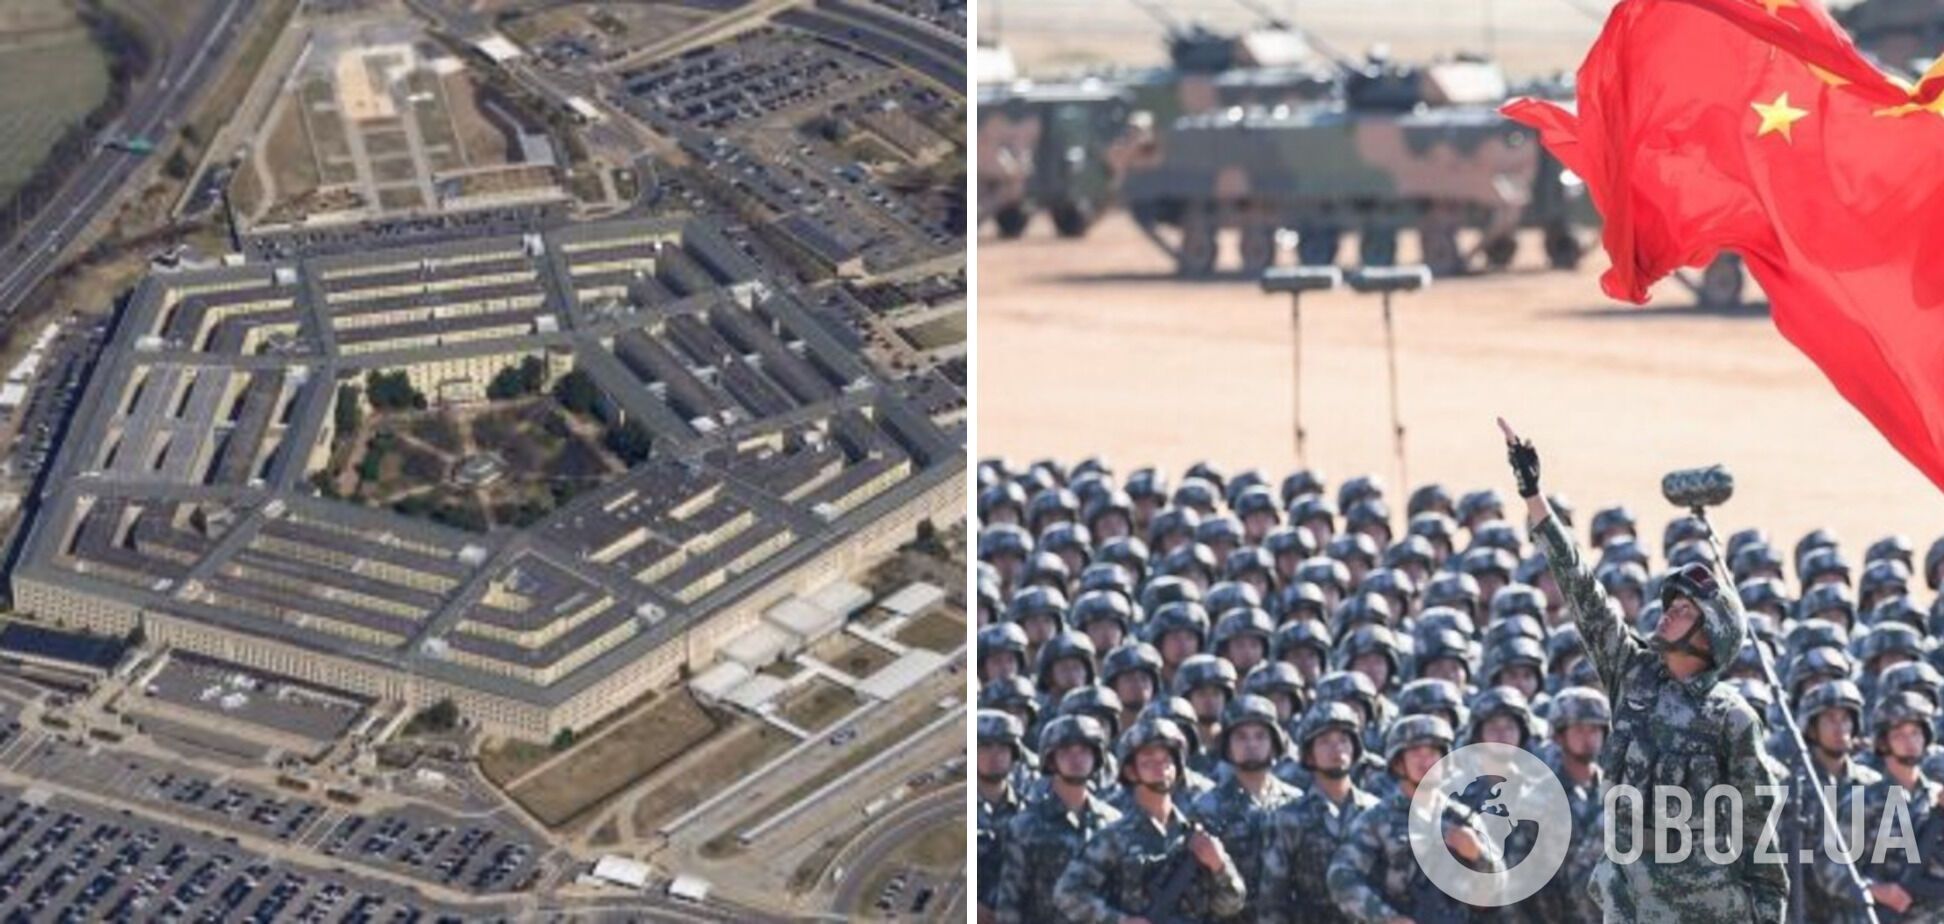 Пентагон планирует наращивание военного потенциала для противодействия Китаю.